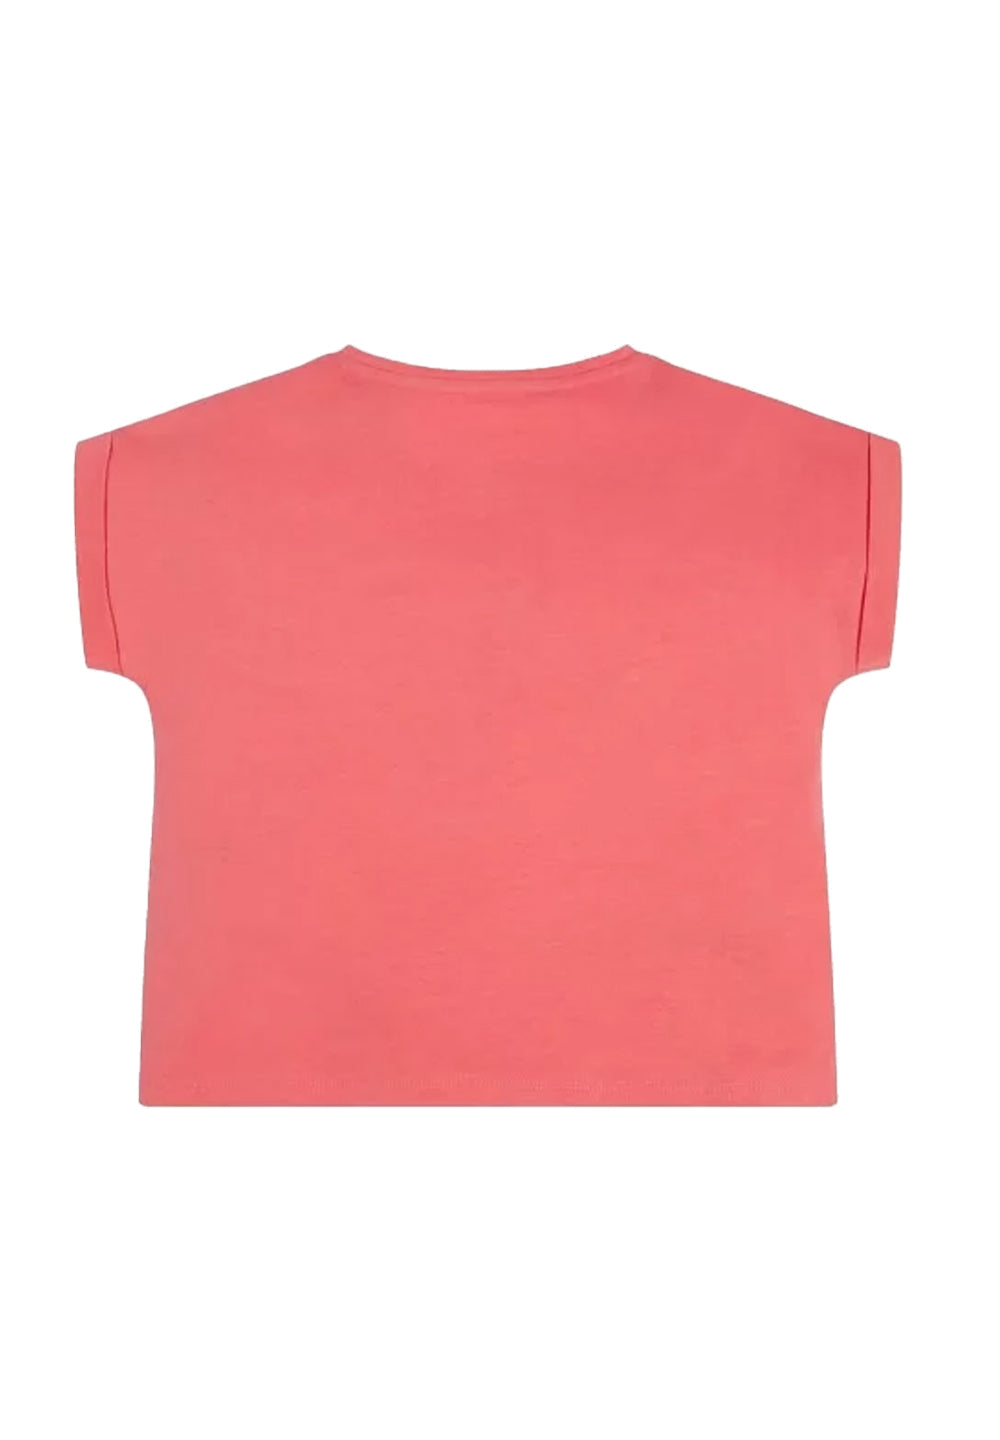 T-shirt corallo per bambina - Primamoda kids